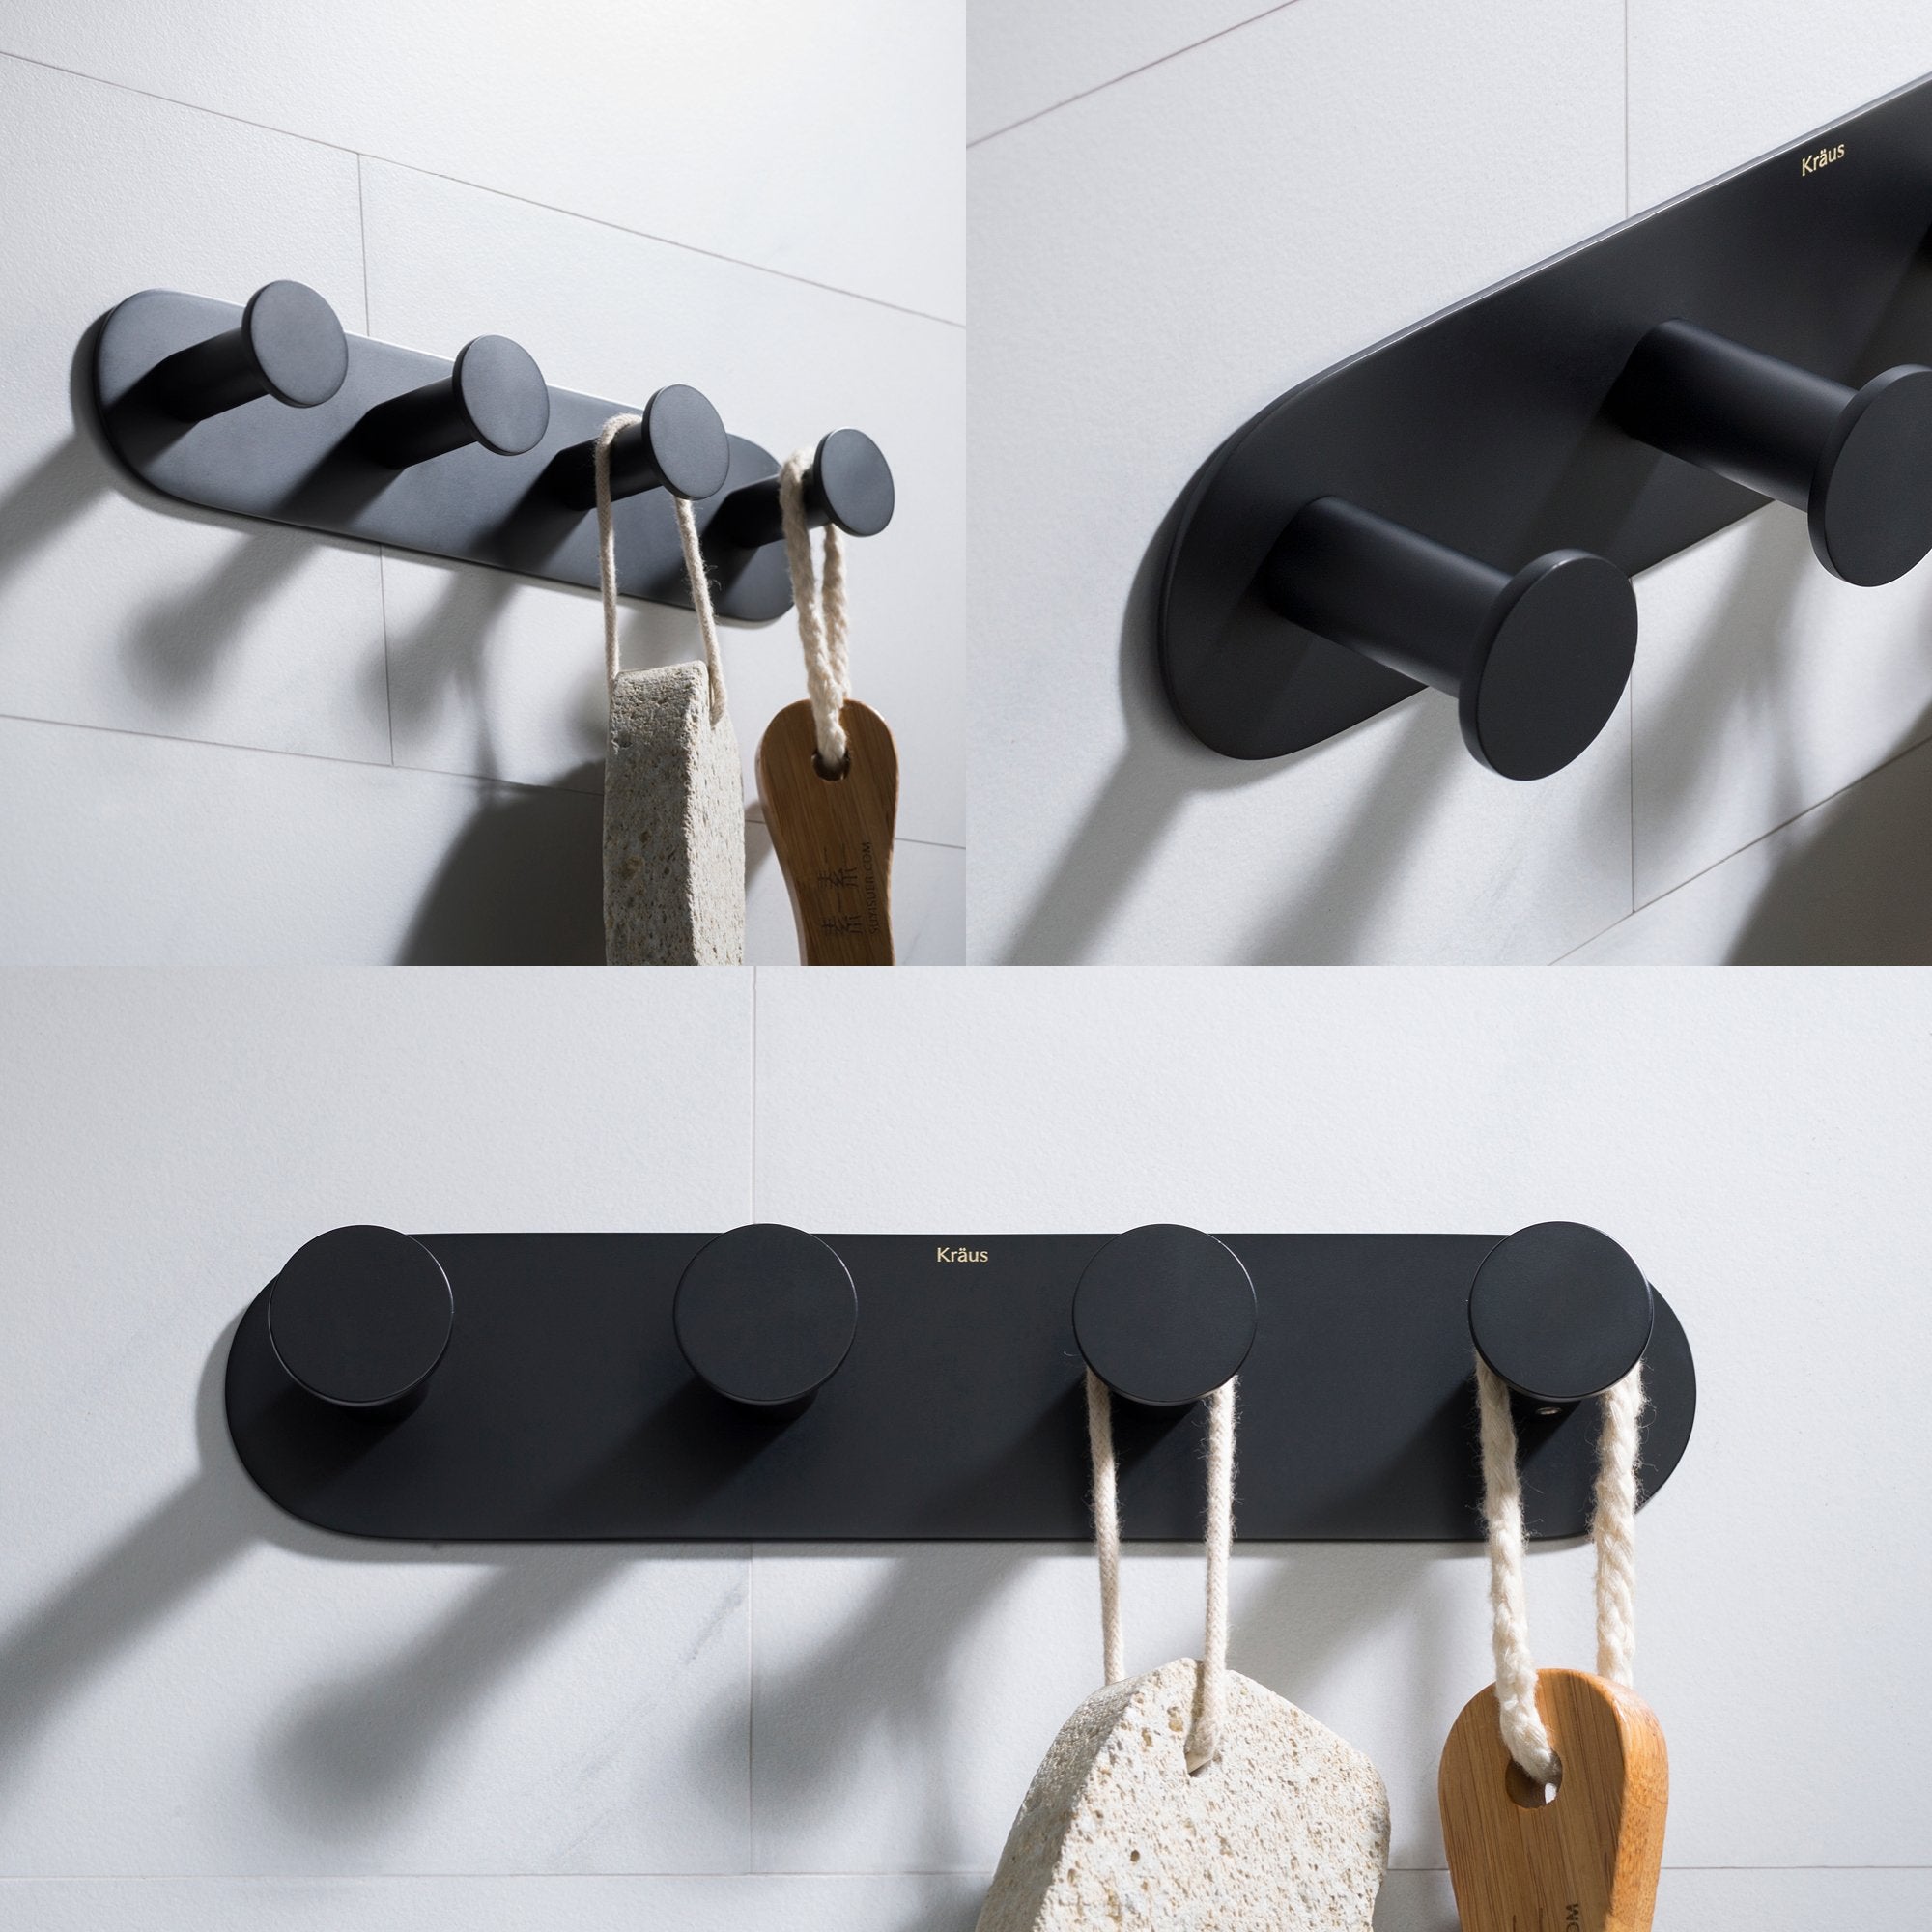 KRAUS Elie™ Bathroom Robe and Towel Hook Rack with 4 Hooks-Bathroom Accessories-KRAUS